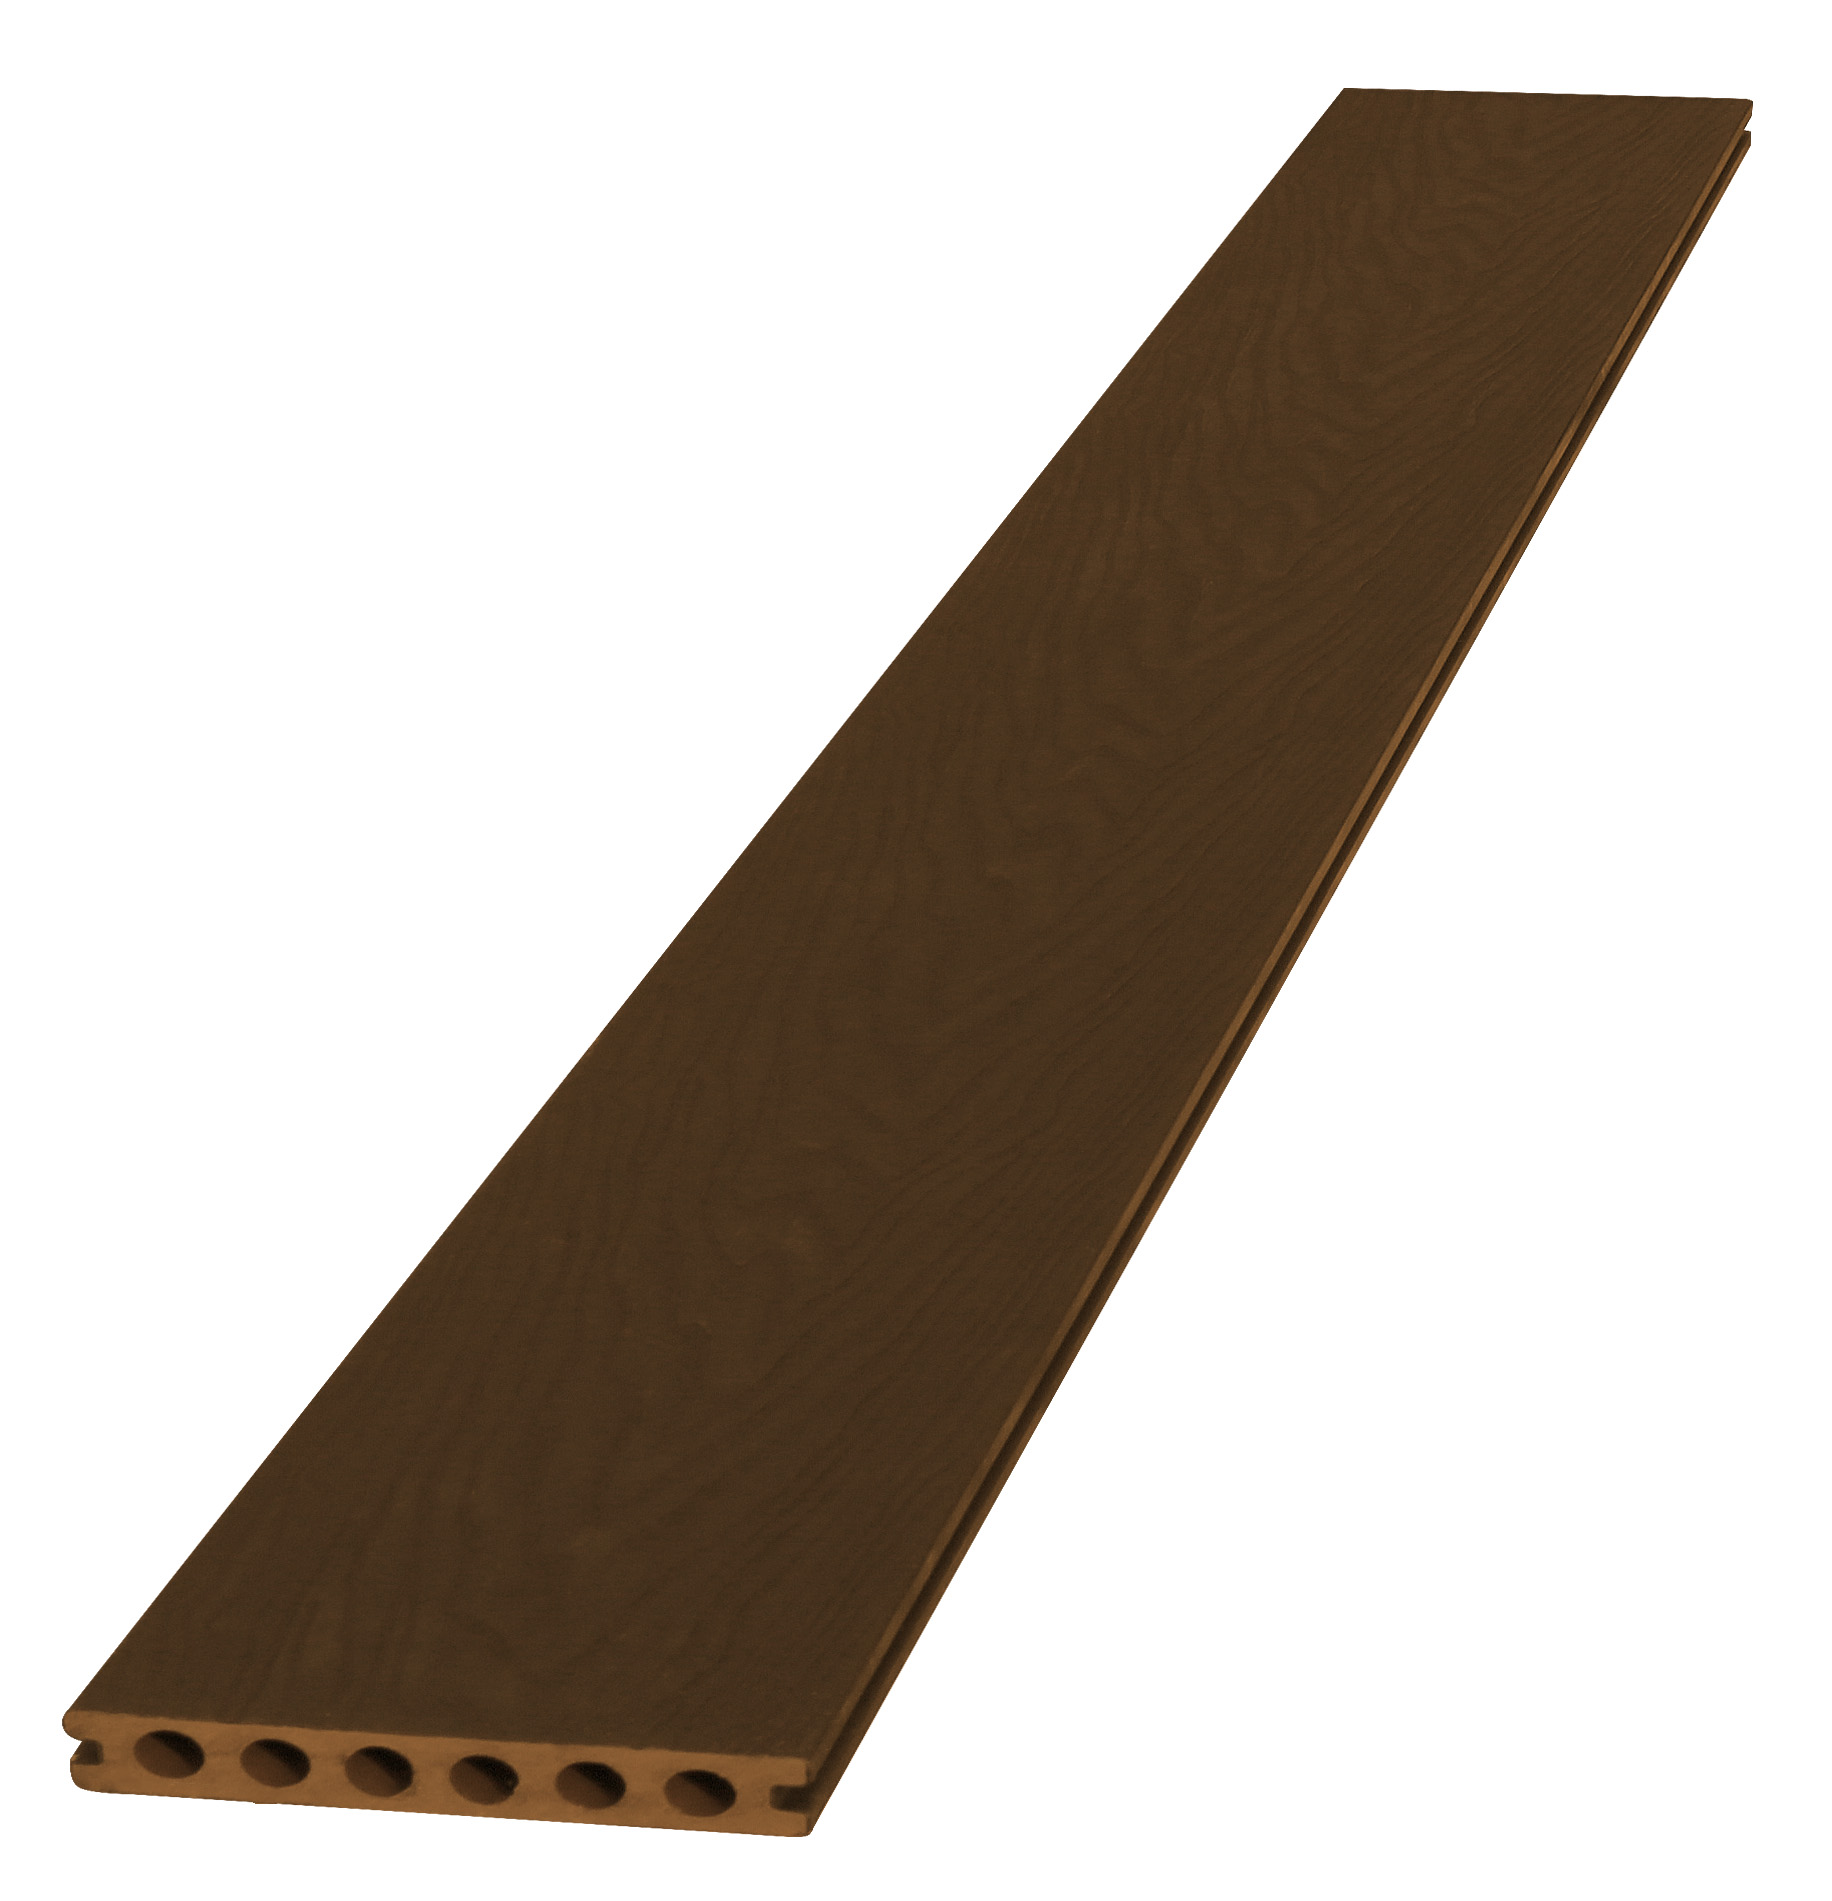 Woodvision composiet vlonderplank met co-extrusie, bruin, 2.3 x 14.5 x 420 cm